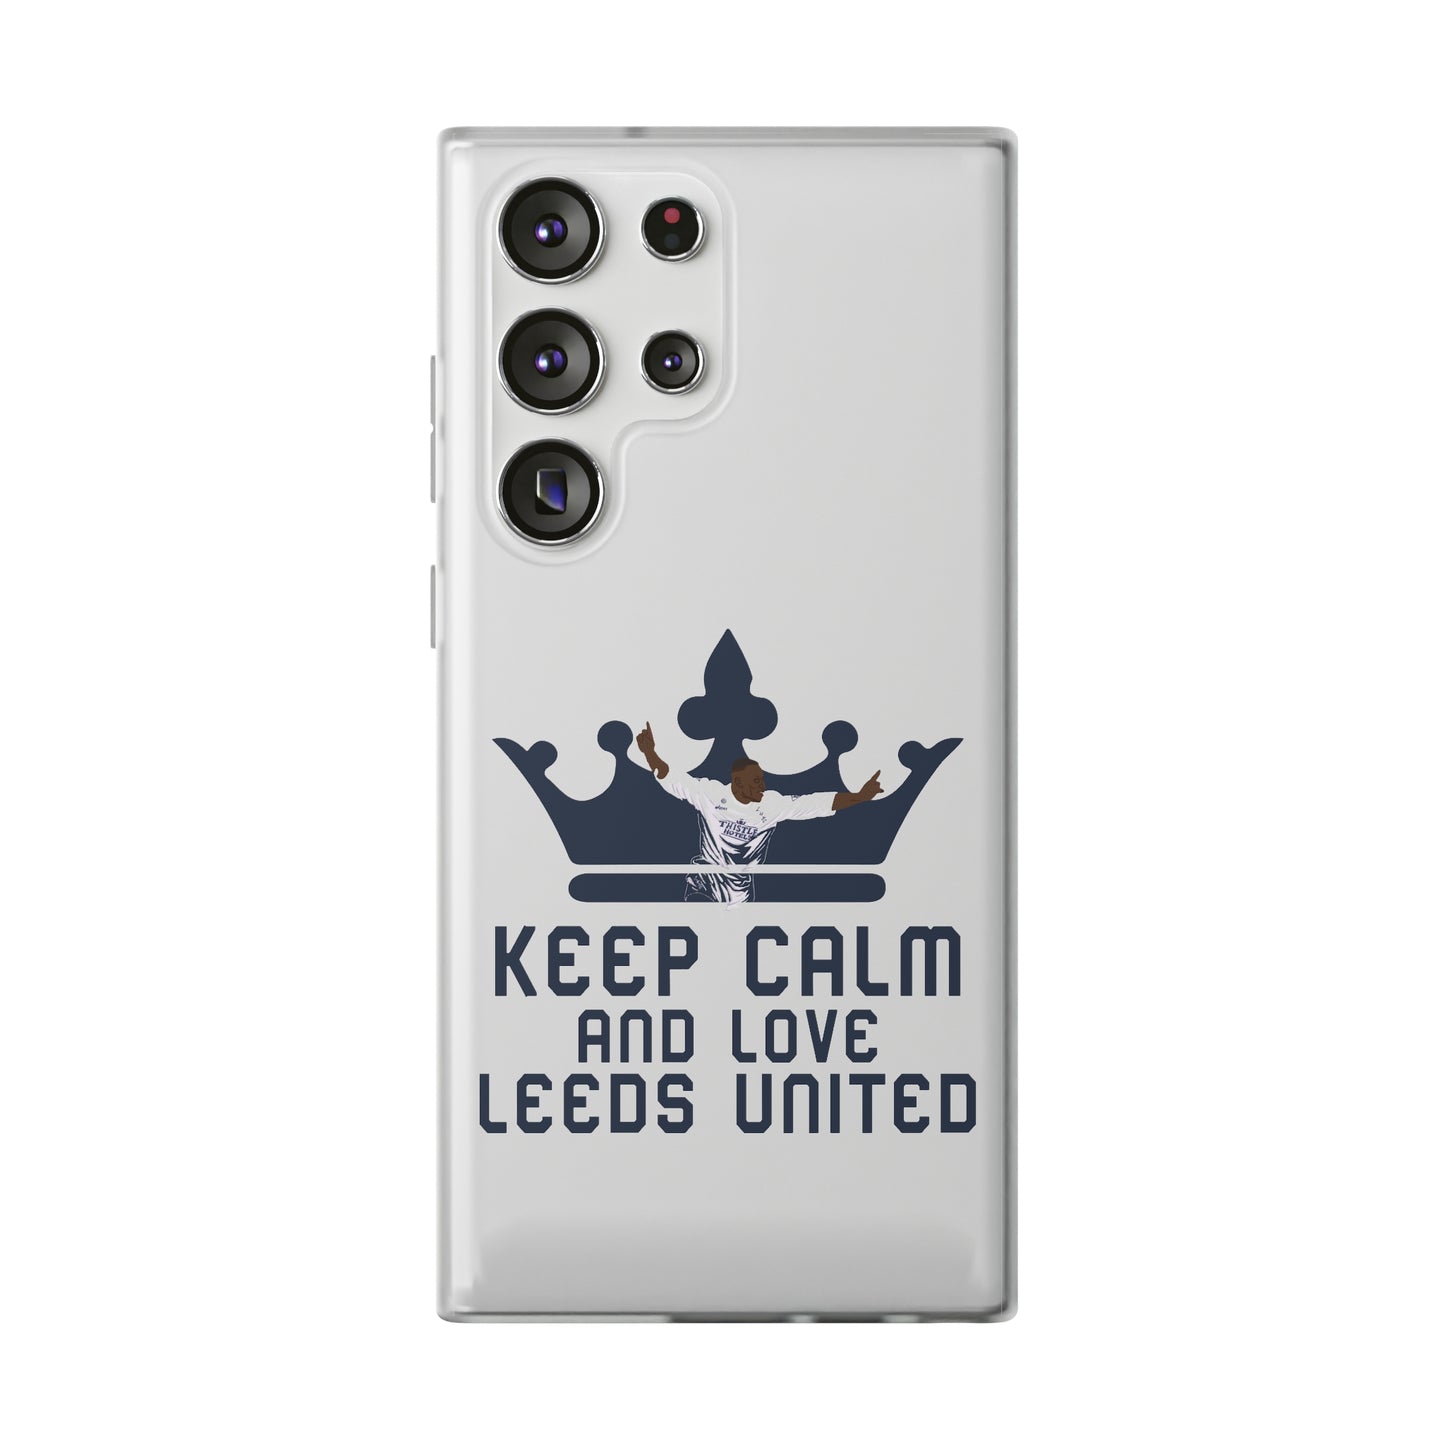 Funda flexible: mantén la calma y ama al Leeds United